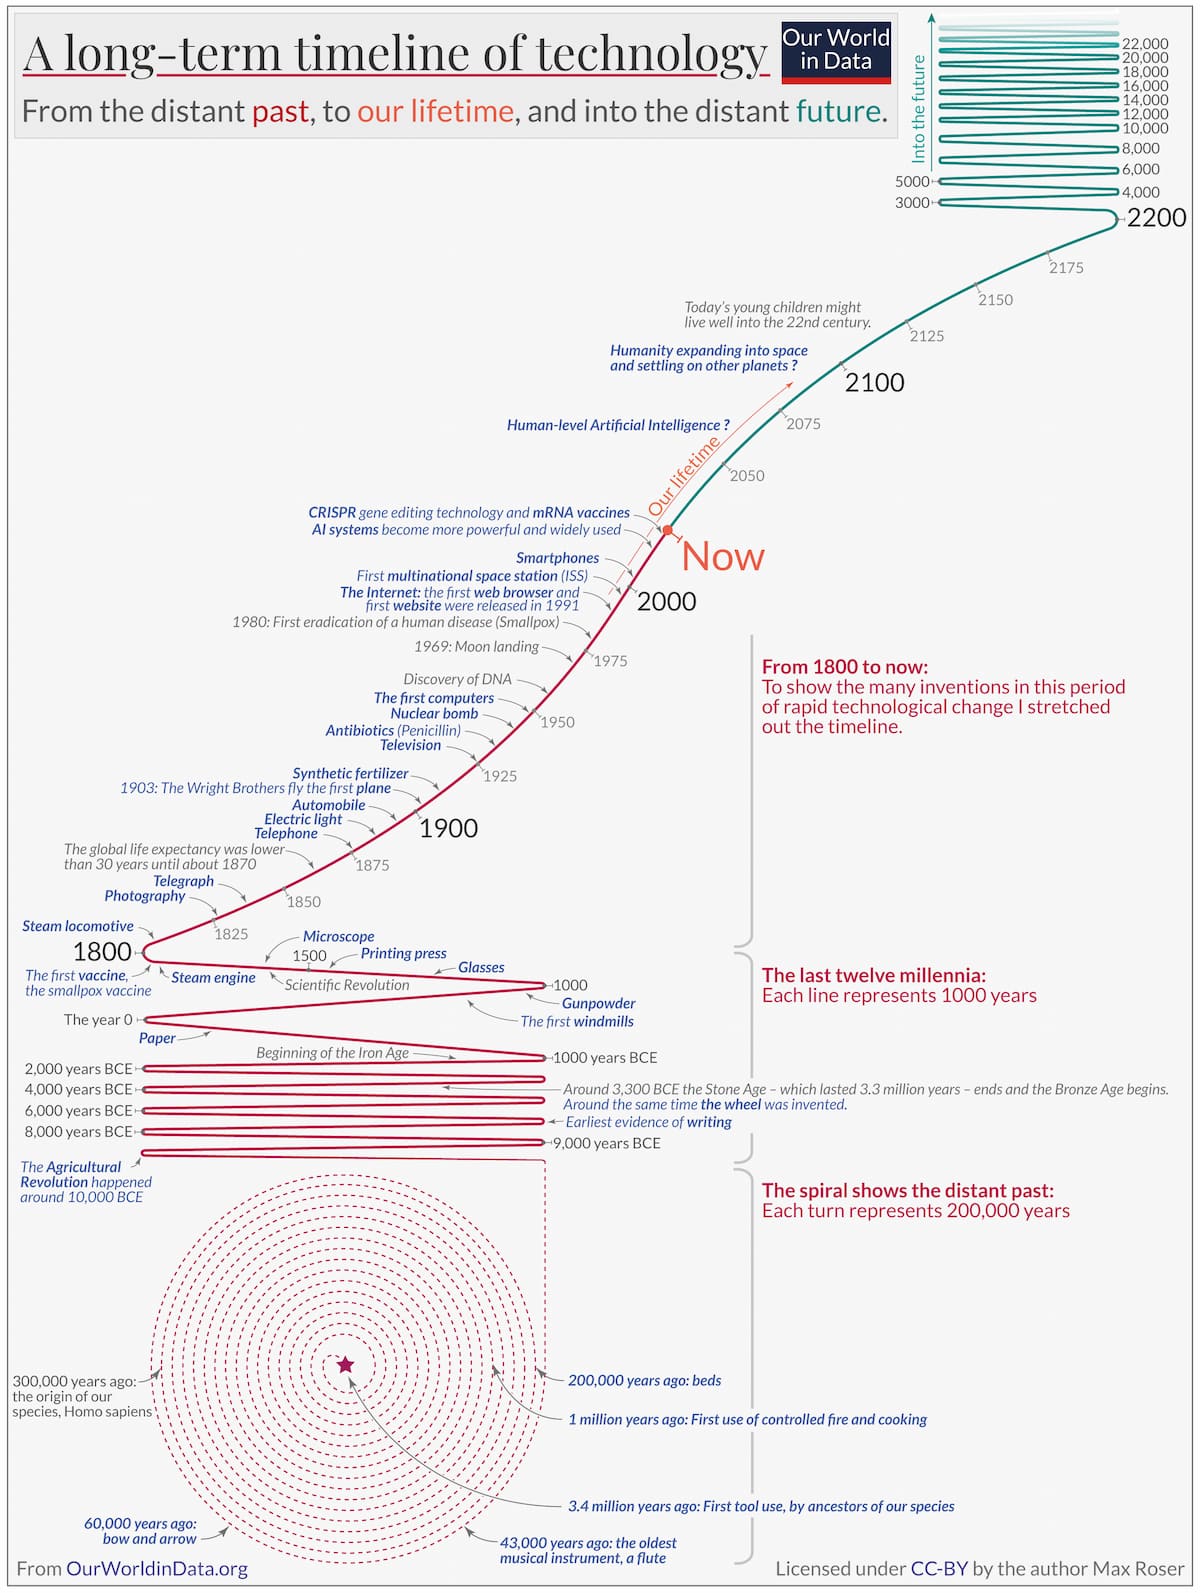 La historia de la tecnología a largo plazo en una infografía de Max Roser